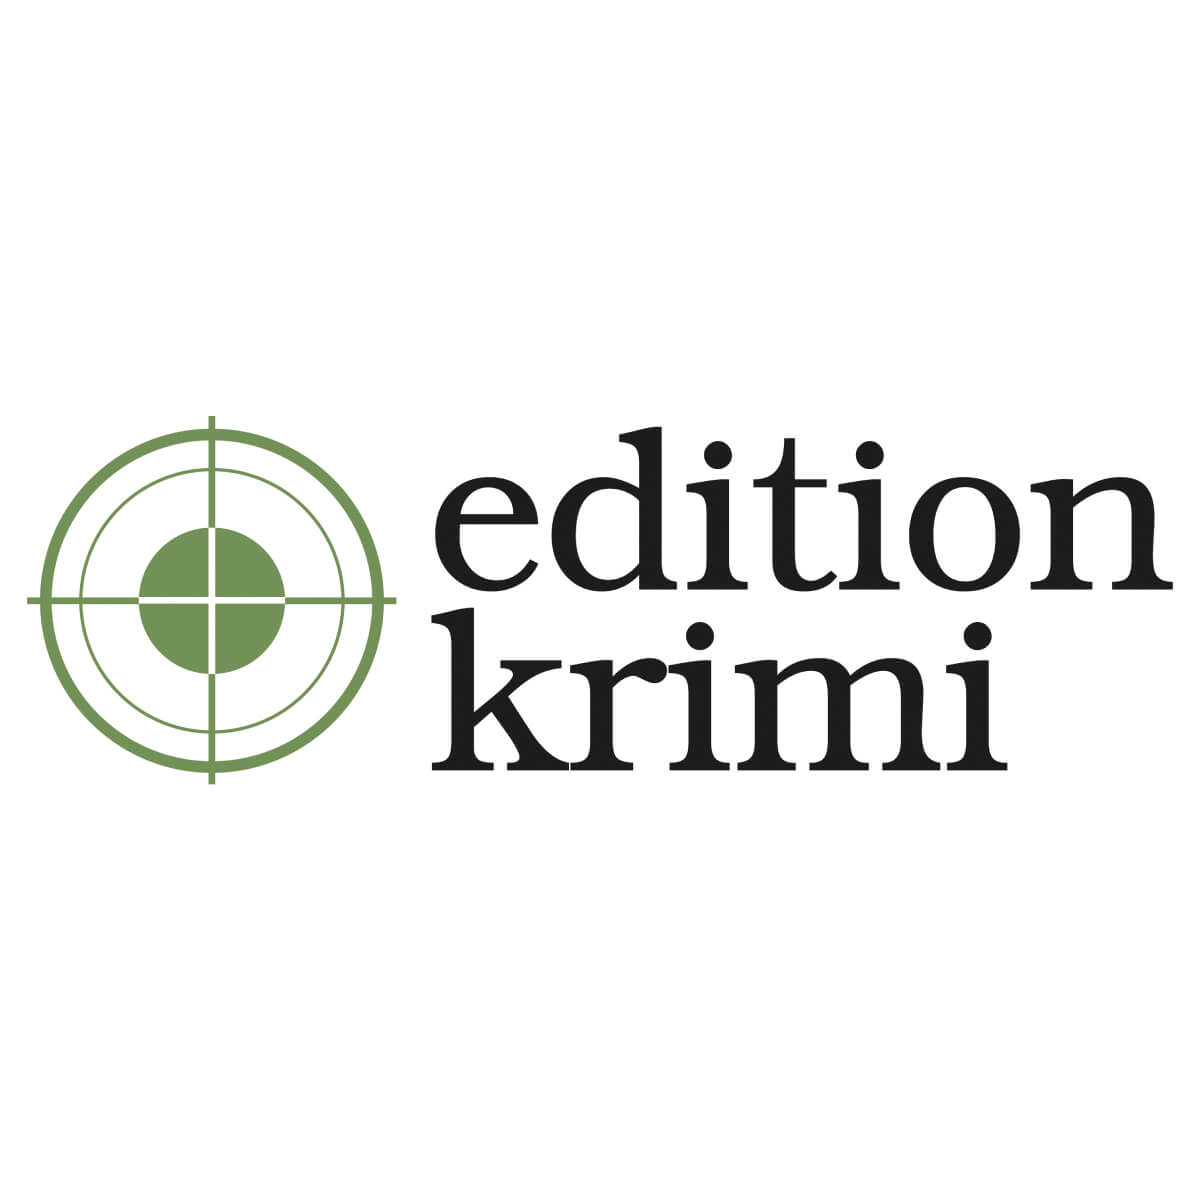 edition krimi | Bookspread